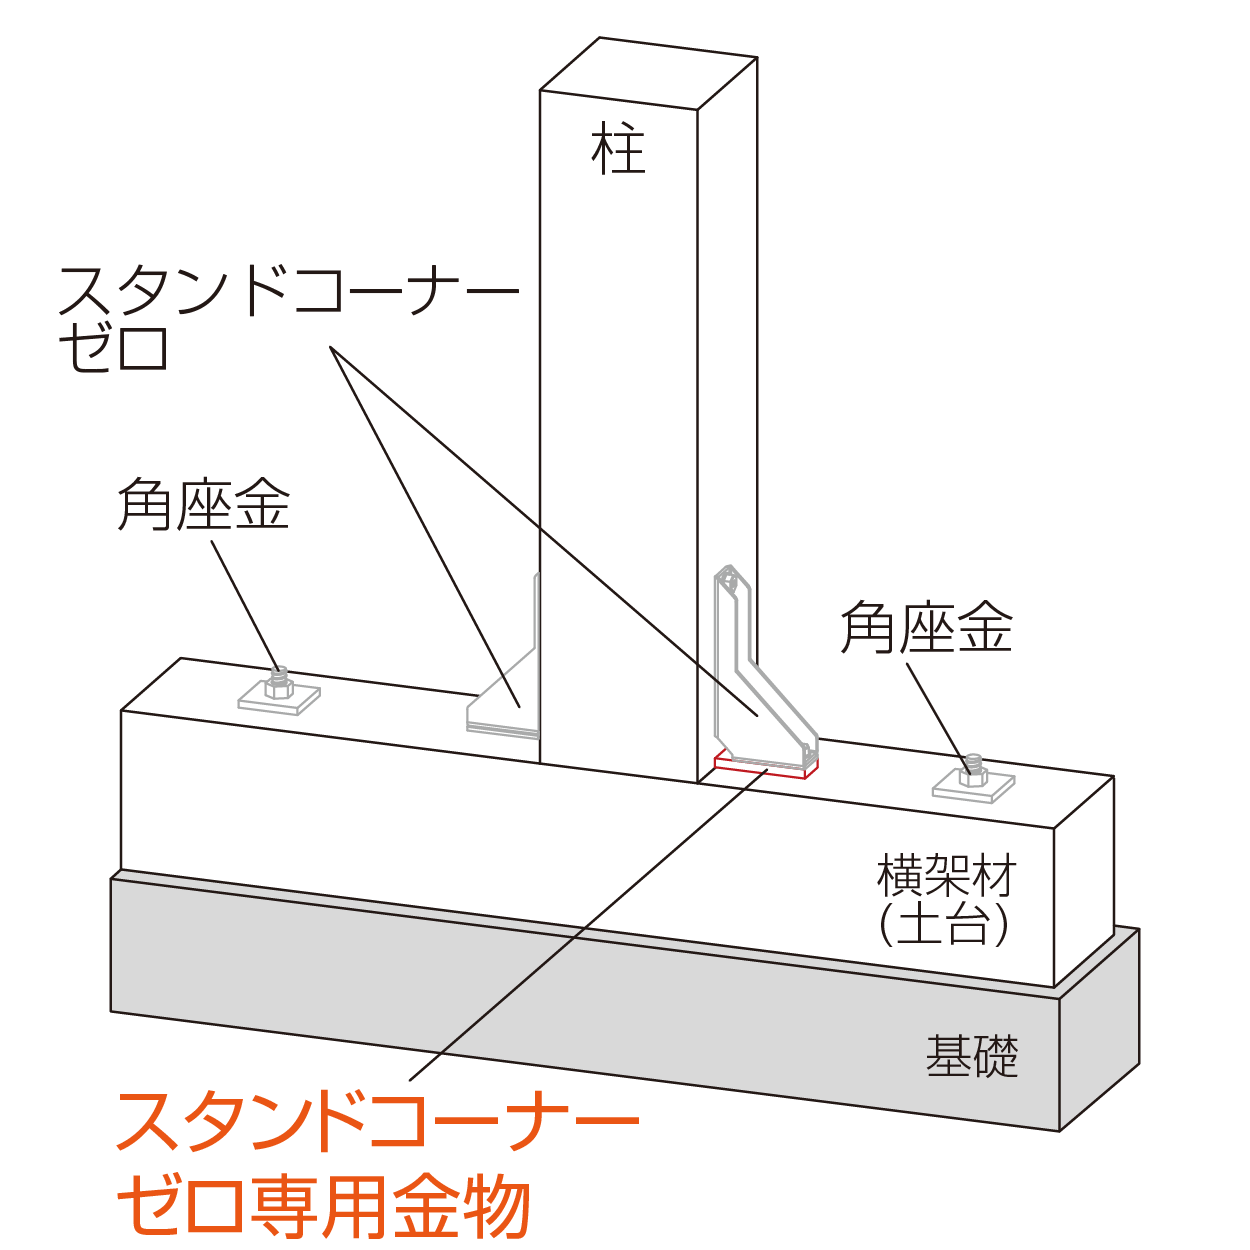 スタンドコーナーゼロ専用金物 柱脚使用例（中柱）